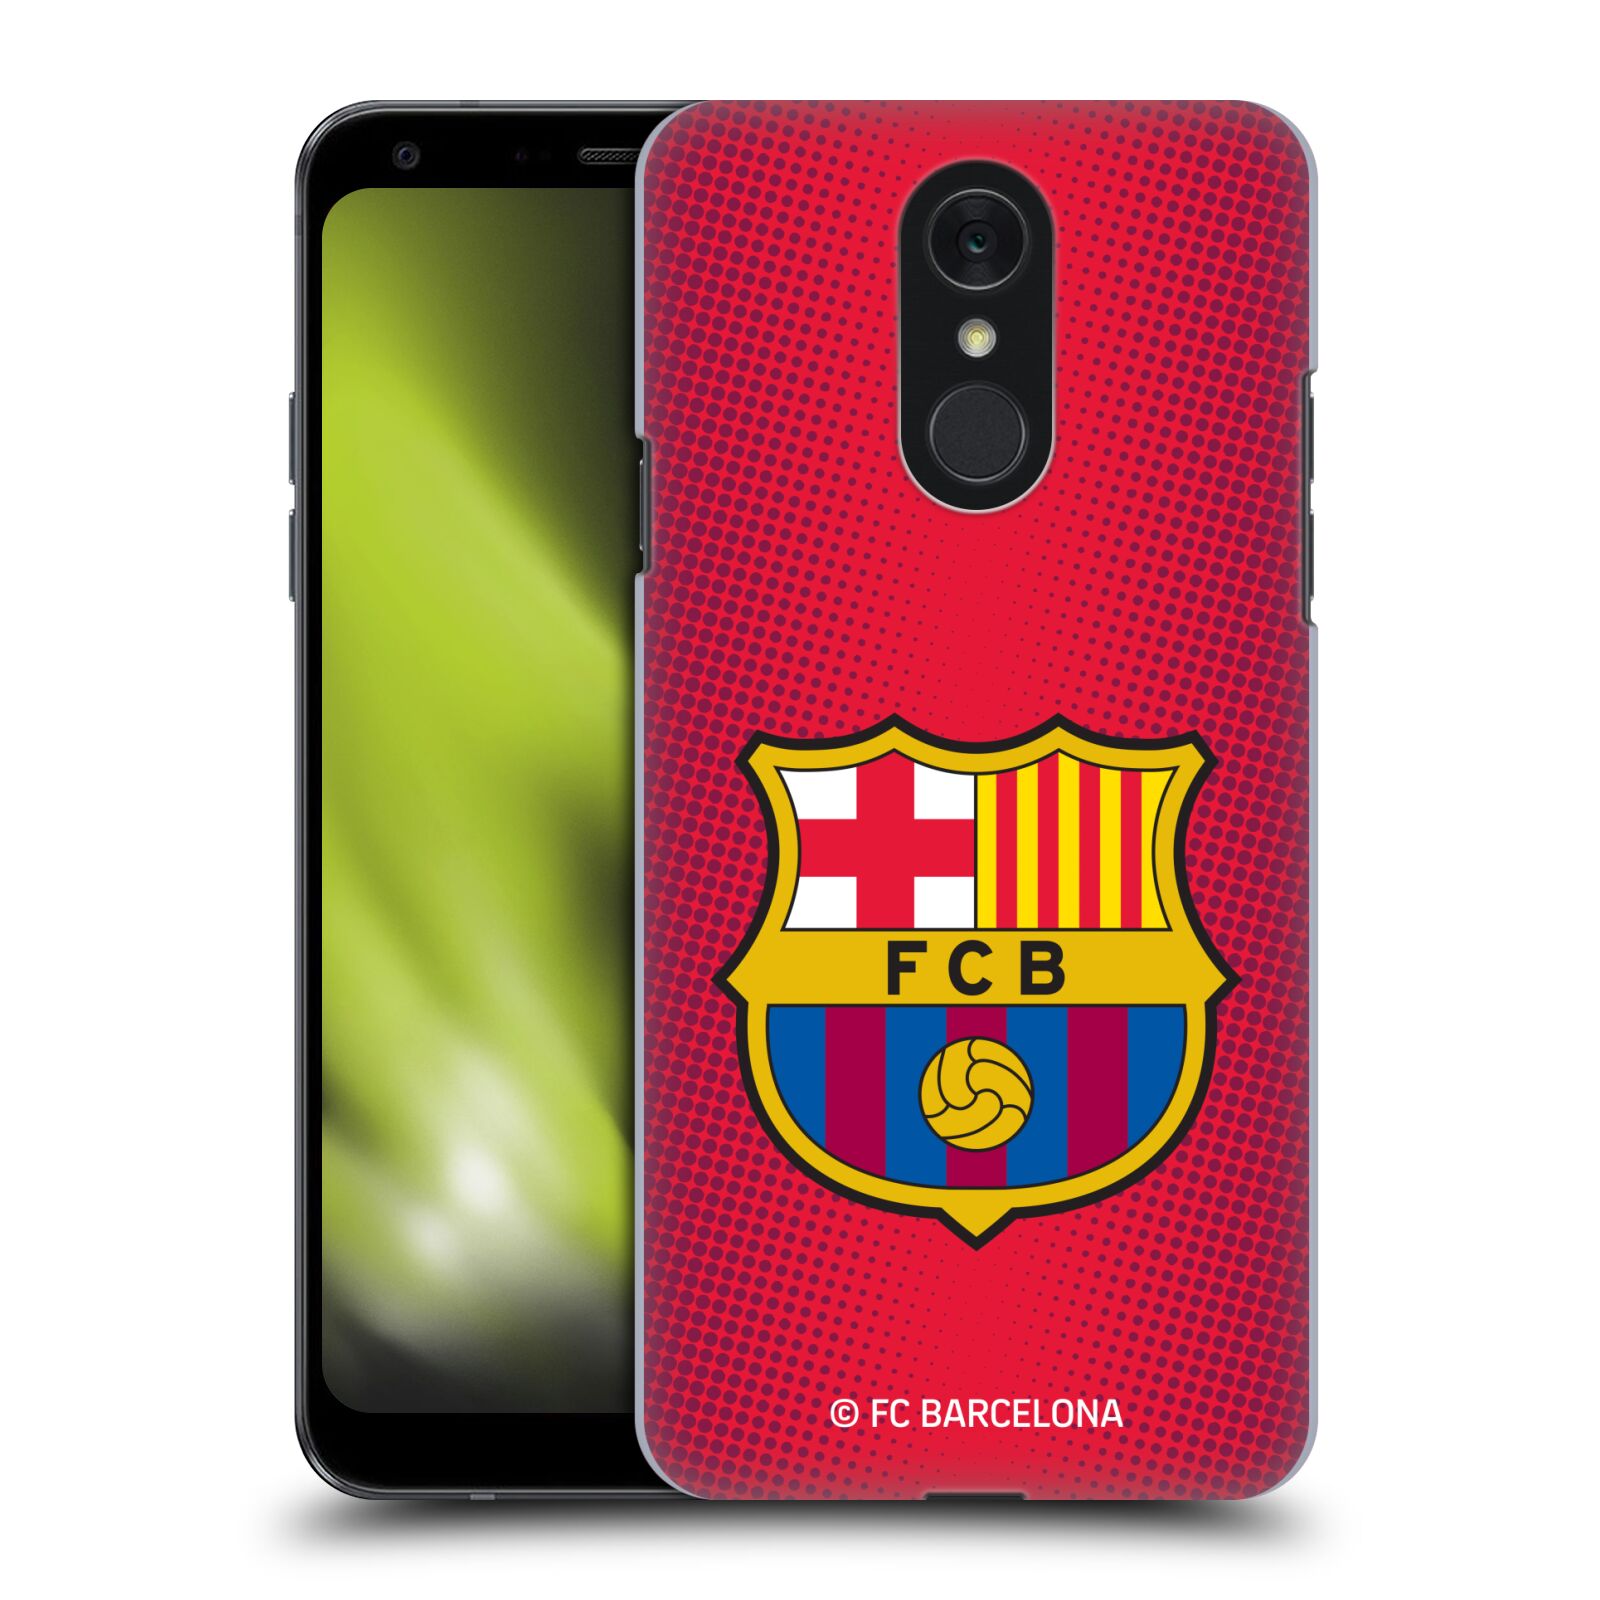 Obal na mobil LG Q7 - HEAD CASE - FC BARCELONA - Velký znak červená a modrá